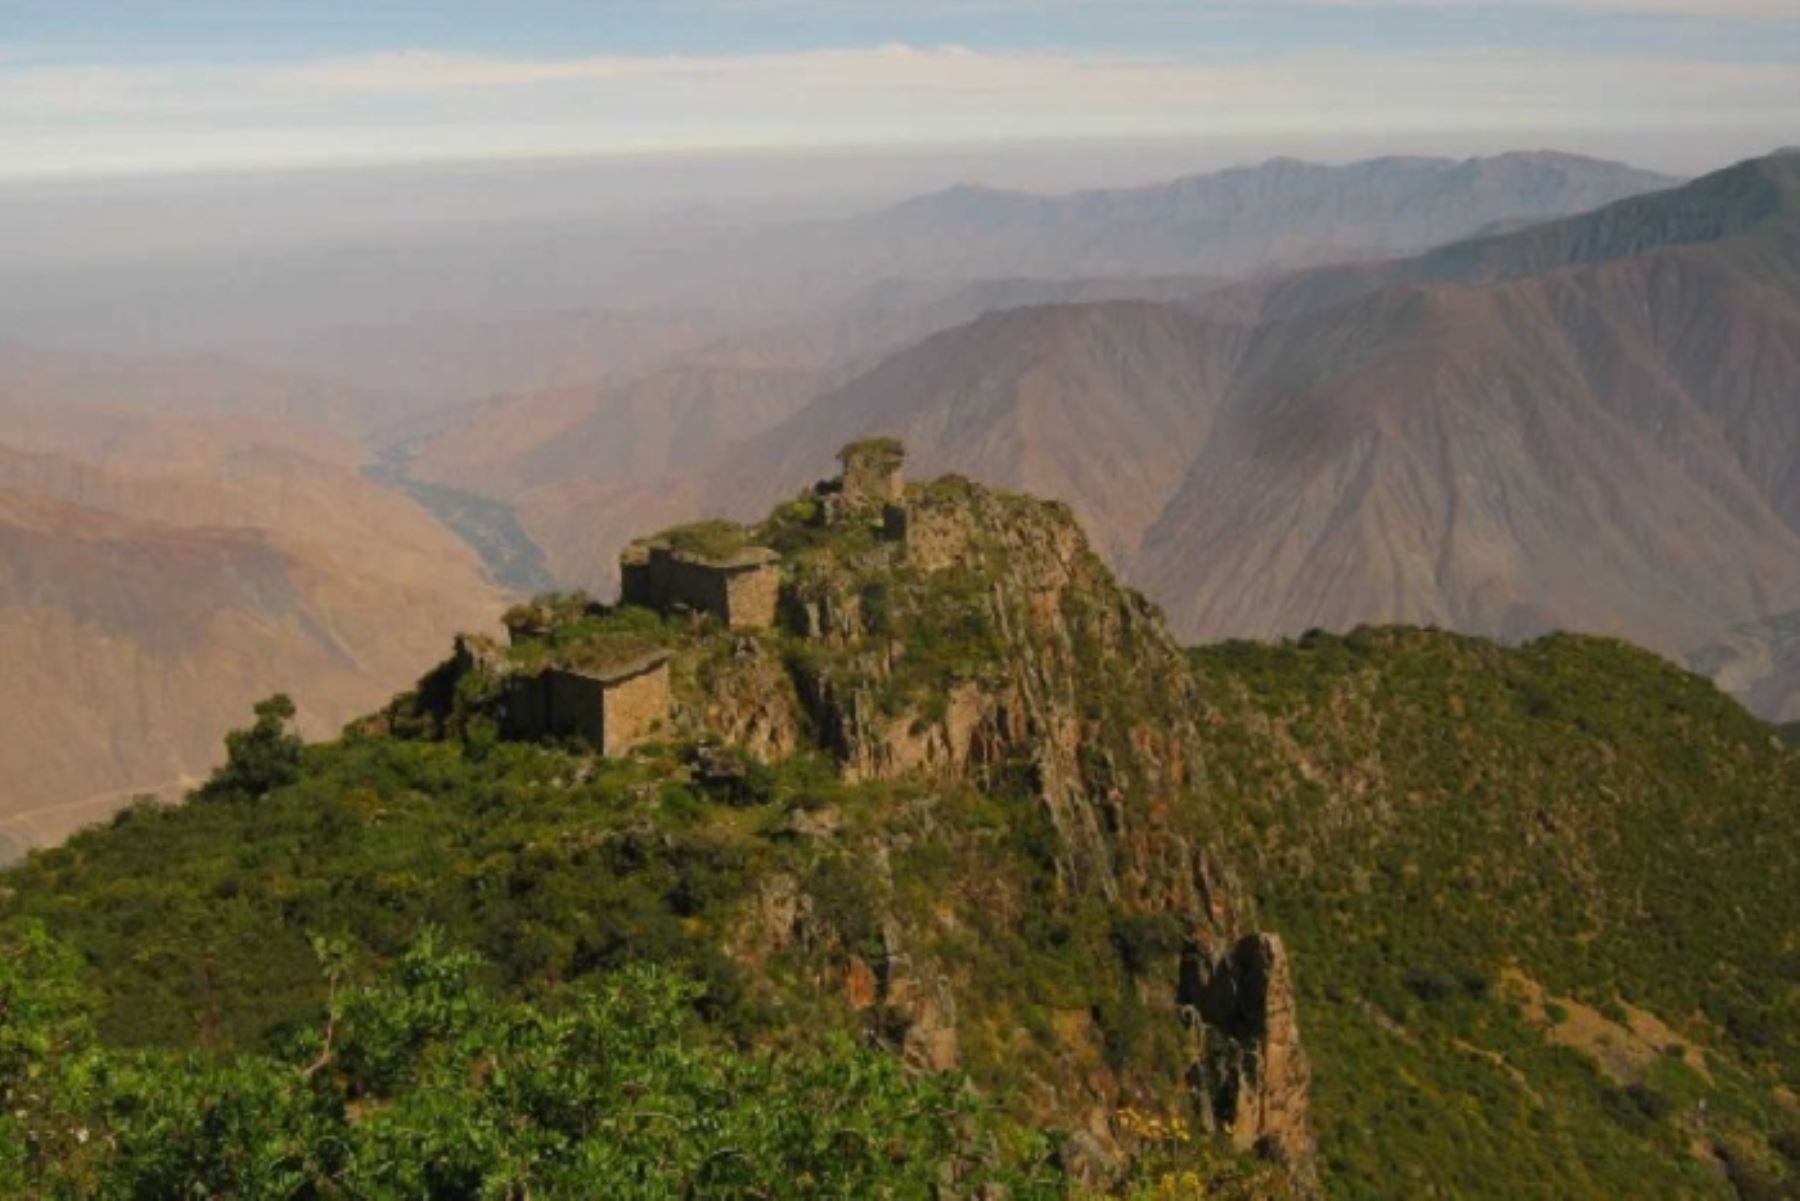 Con una nutrida programación cultural, el sitio arqueológico Rupac, denominado el Machu Picchu limeño y ubicado en el distrito de Atavillos Bajo, en la provincia de Huaral, celebra sus 20 años de haber sido declarado Patrimonio Cultural de la Nación. Las actividades festivas se realizarán del 13 al 21 de junio.